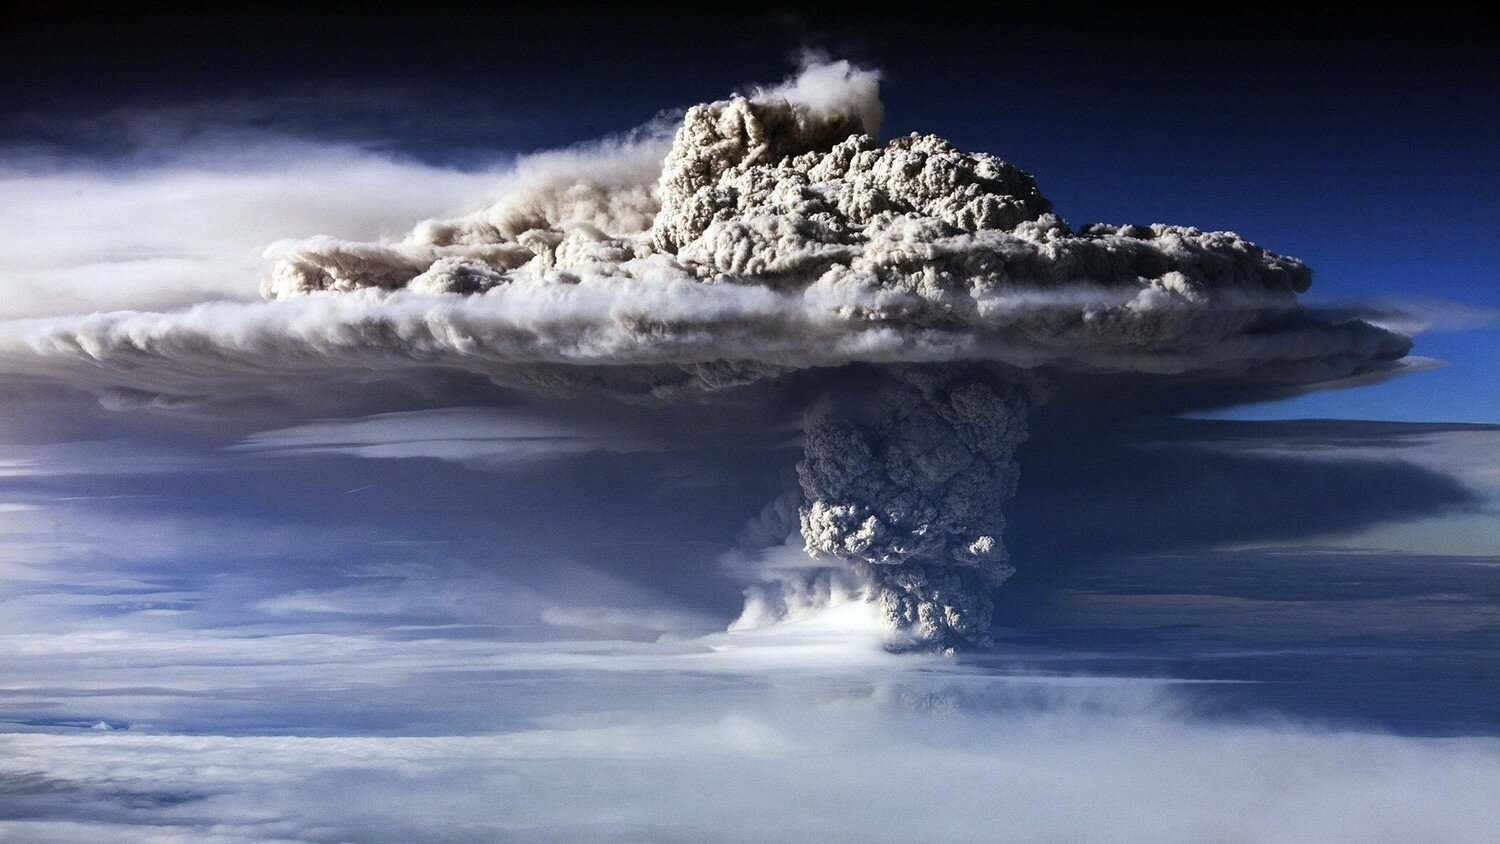 Ужасное предсказание Эдгара Кейси: после извержения Везувия исчезнет Италия, а через 3 месяца Калифорния расколется пополам 